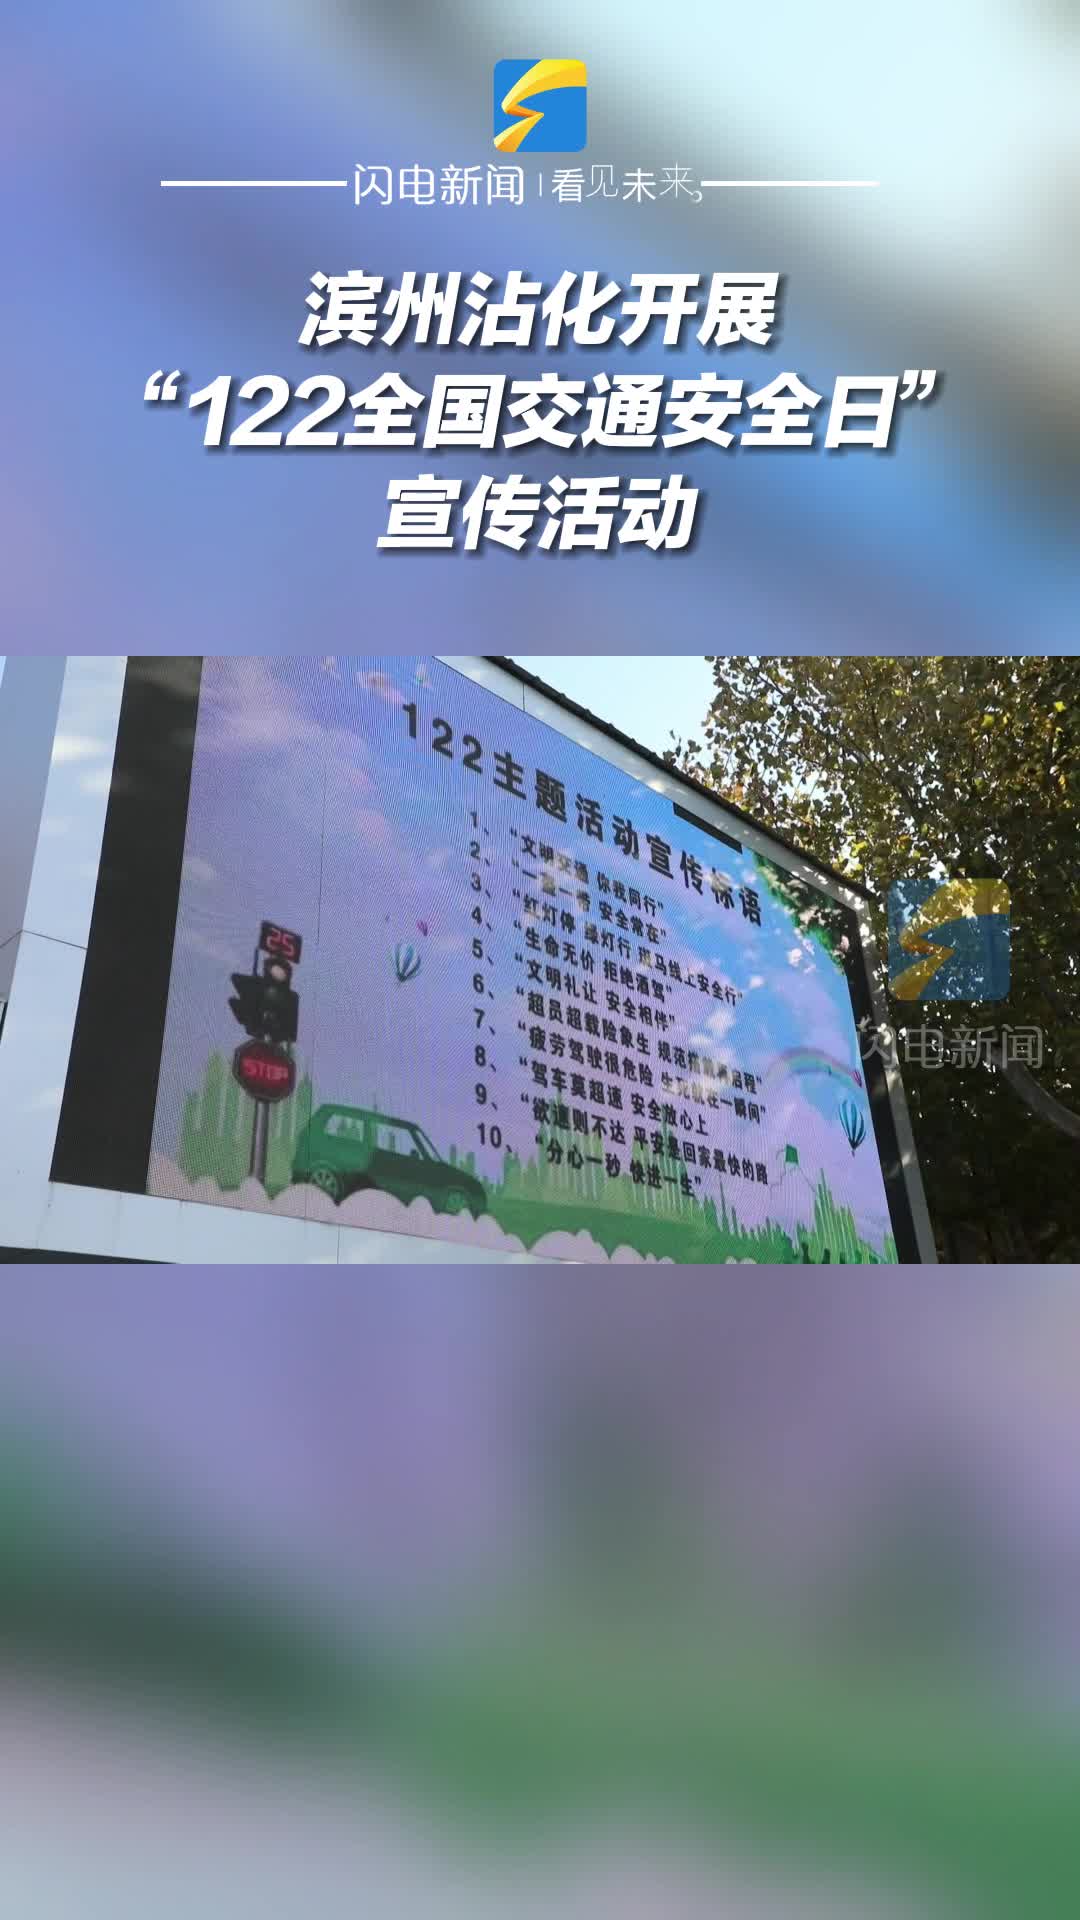 滨州沾化开展“122全国交通安全日”宣传活动